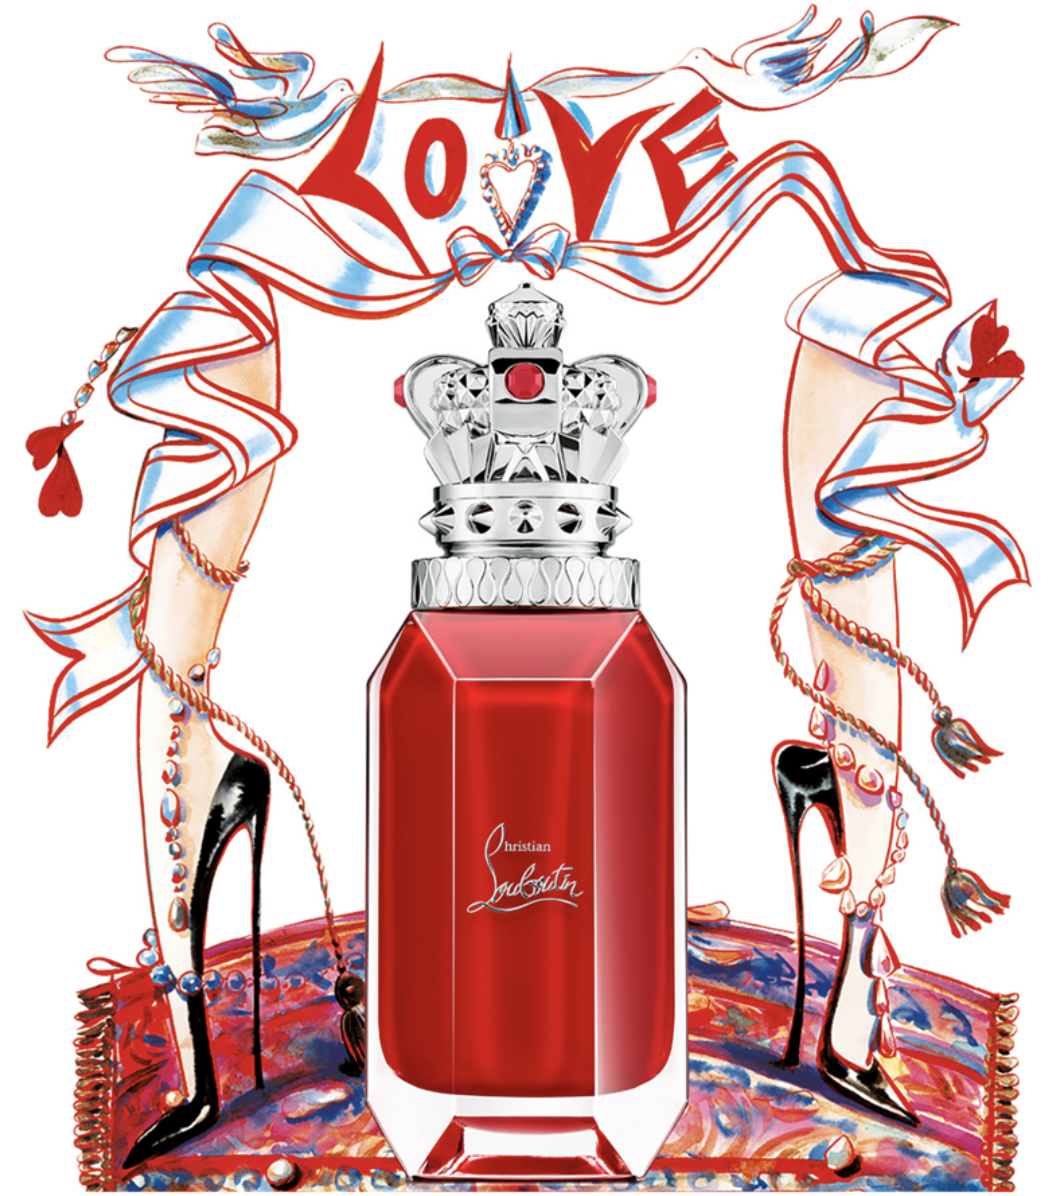 LOUBOUTIN PERFUME SET in 2023  Perfume set, Perfume, Louboutin